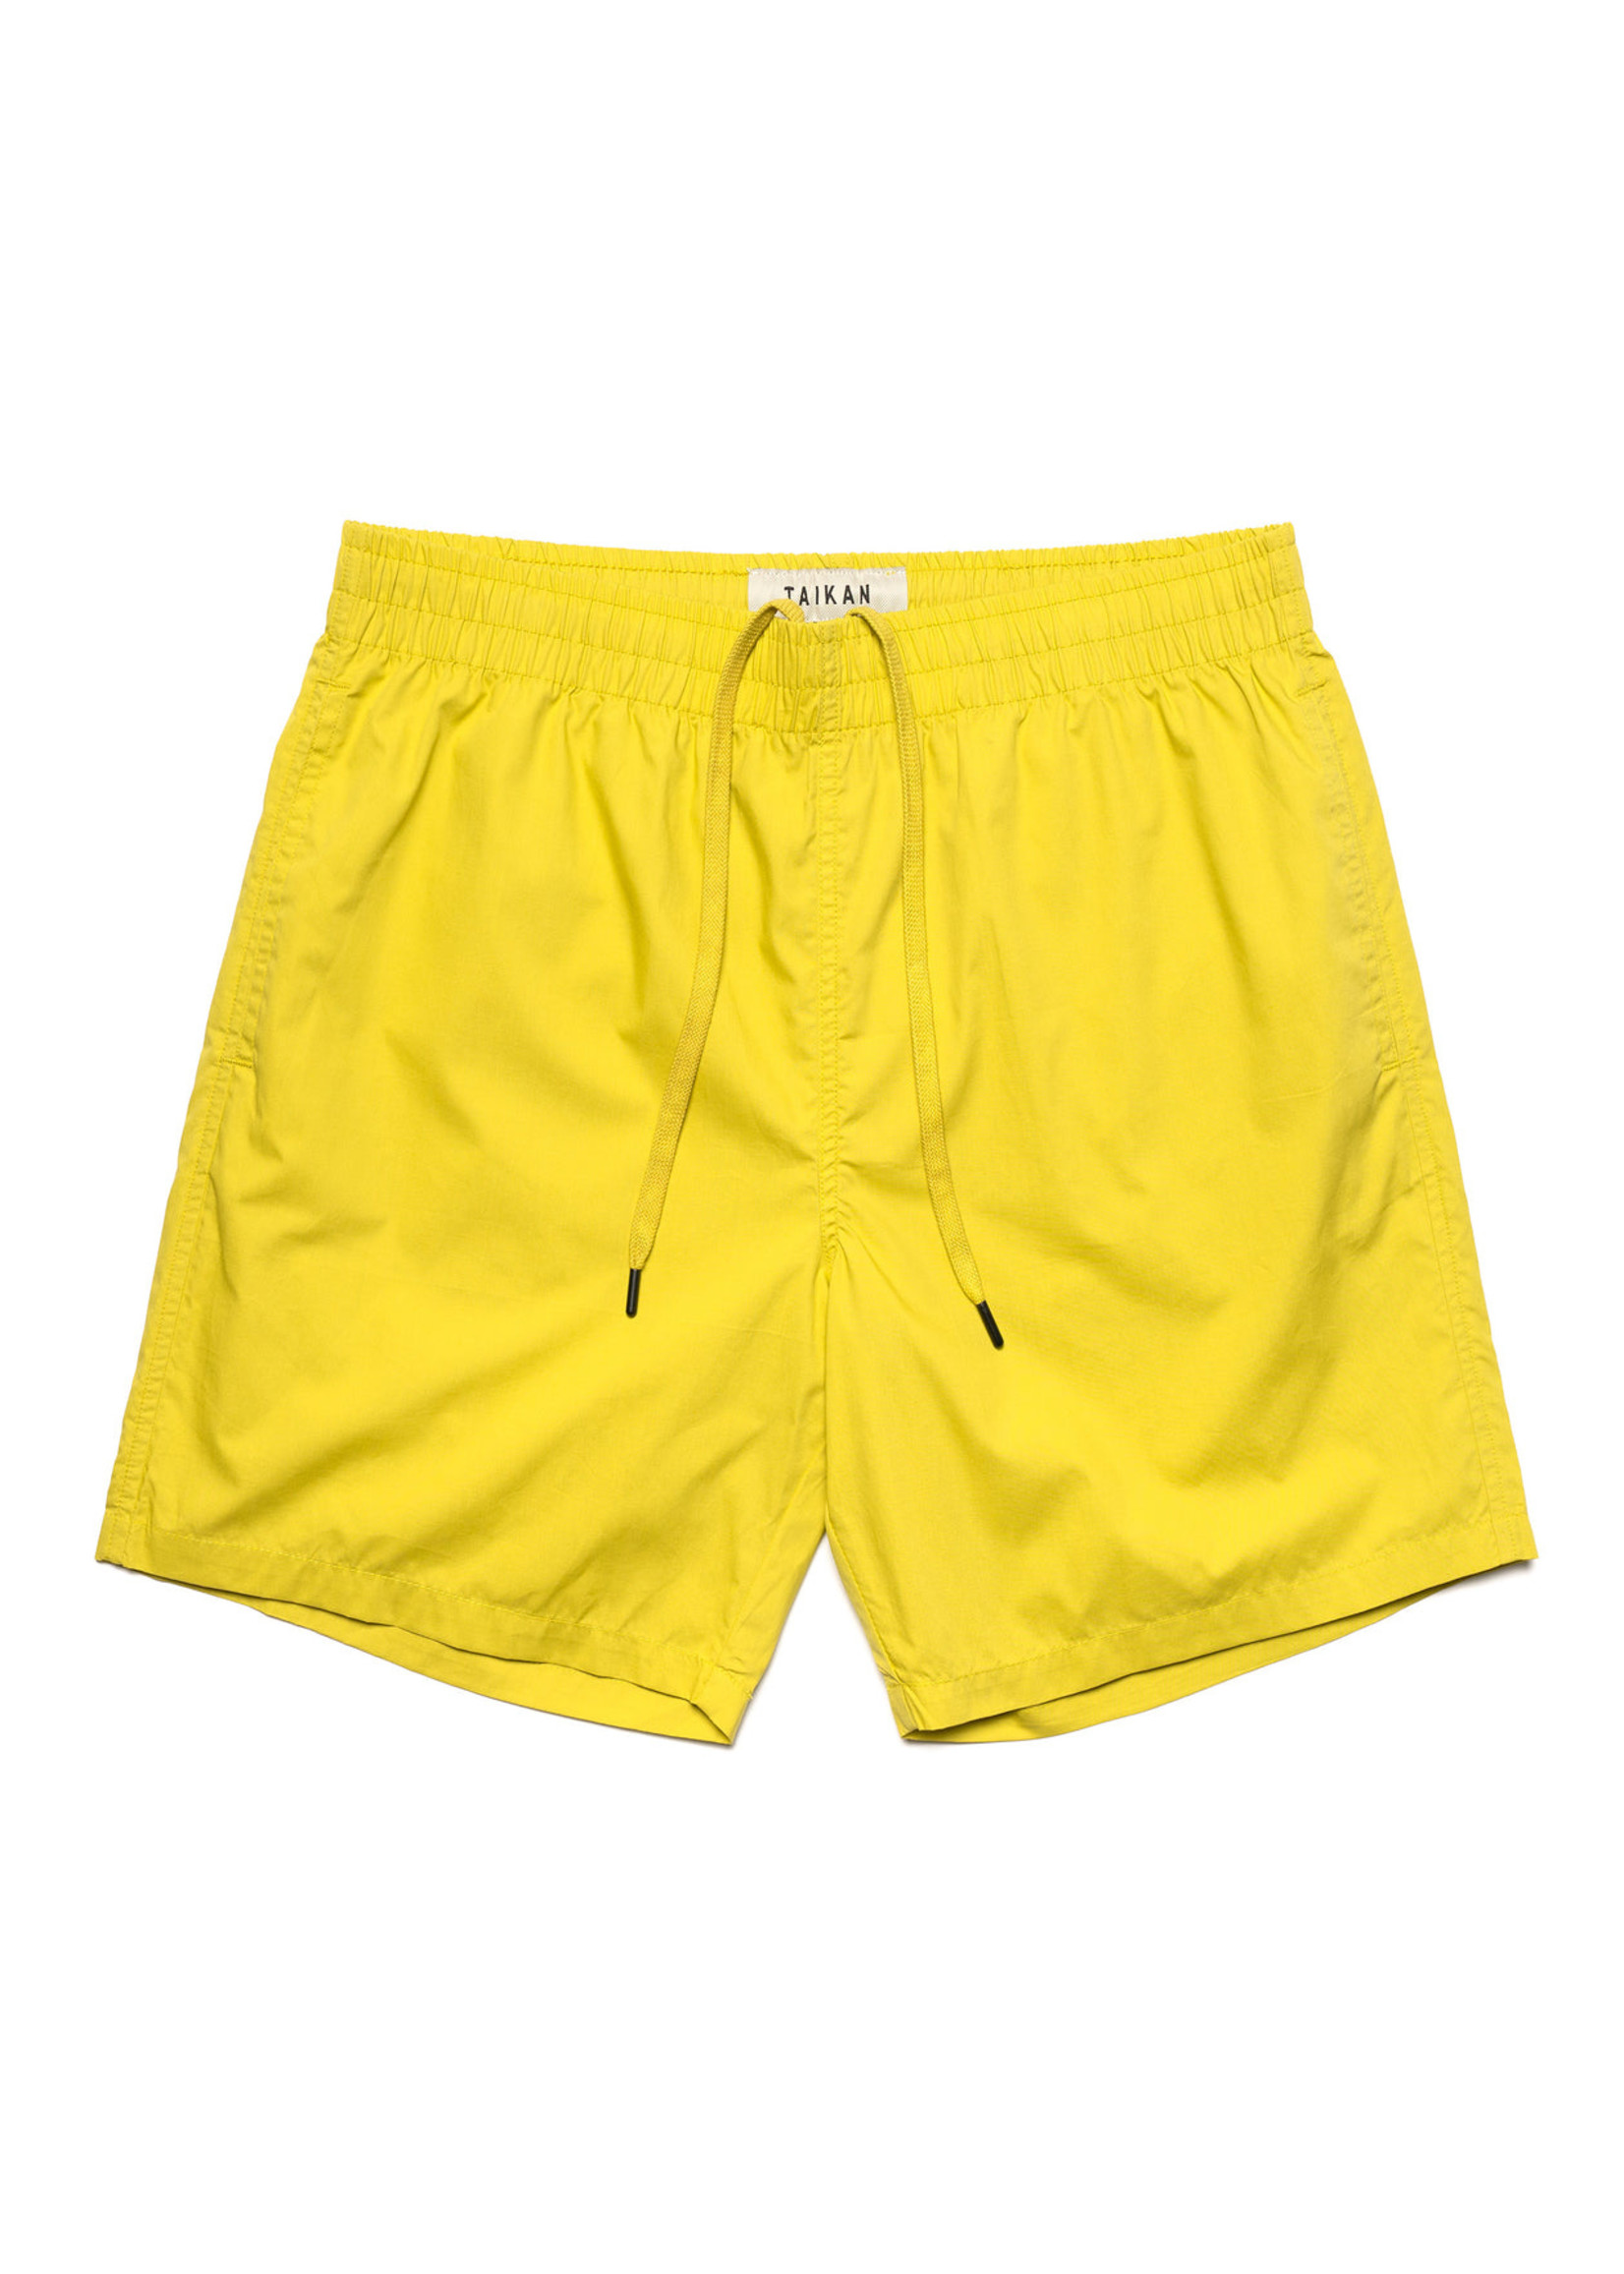 Taikan Taikan - Classic Shorts